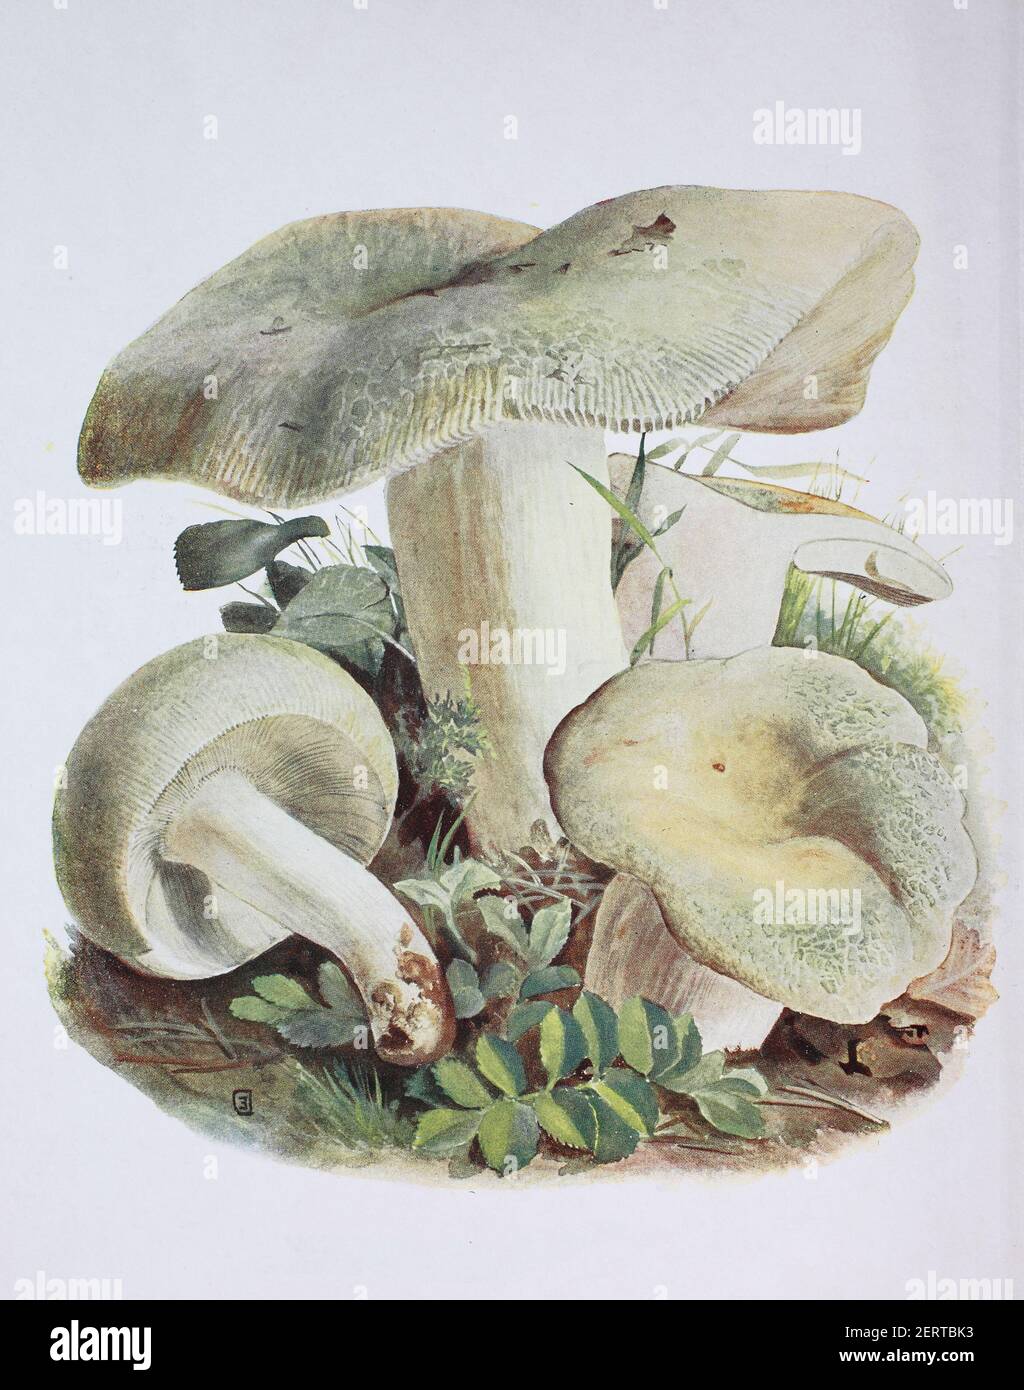 Il russula virescens è un fungo basidiomicete del genere Russula, ed è comunemente noto come russula di cracking verde, russula verde trapuntata, o brittlegill verde, riproduzione digitale di un'immagine di Emil Doerstling (1859-1940) Foto Stock